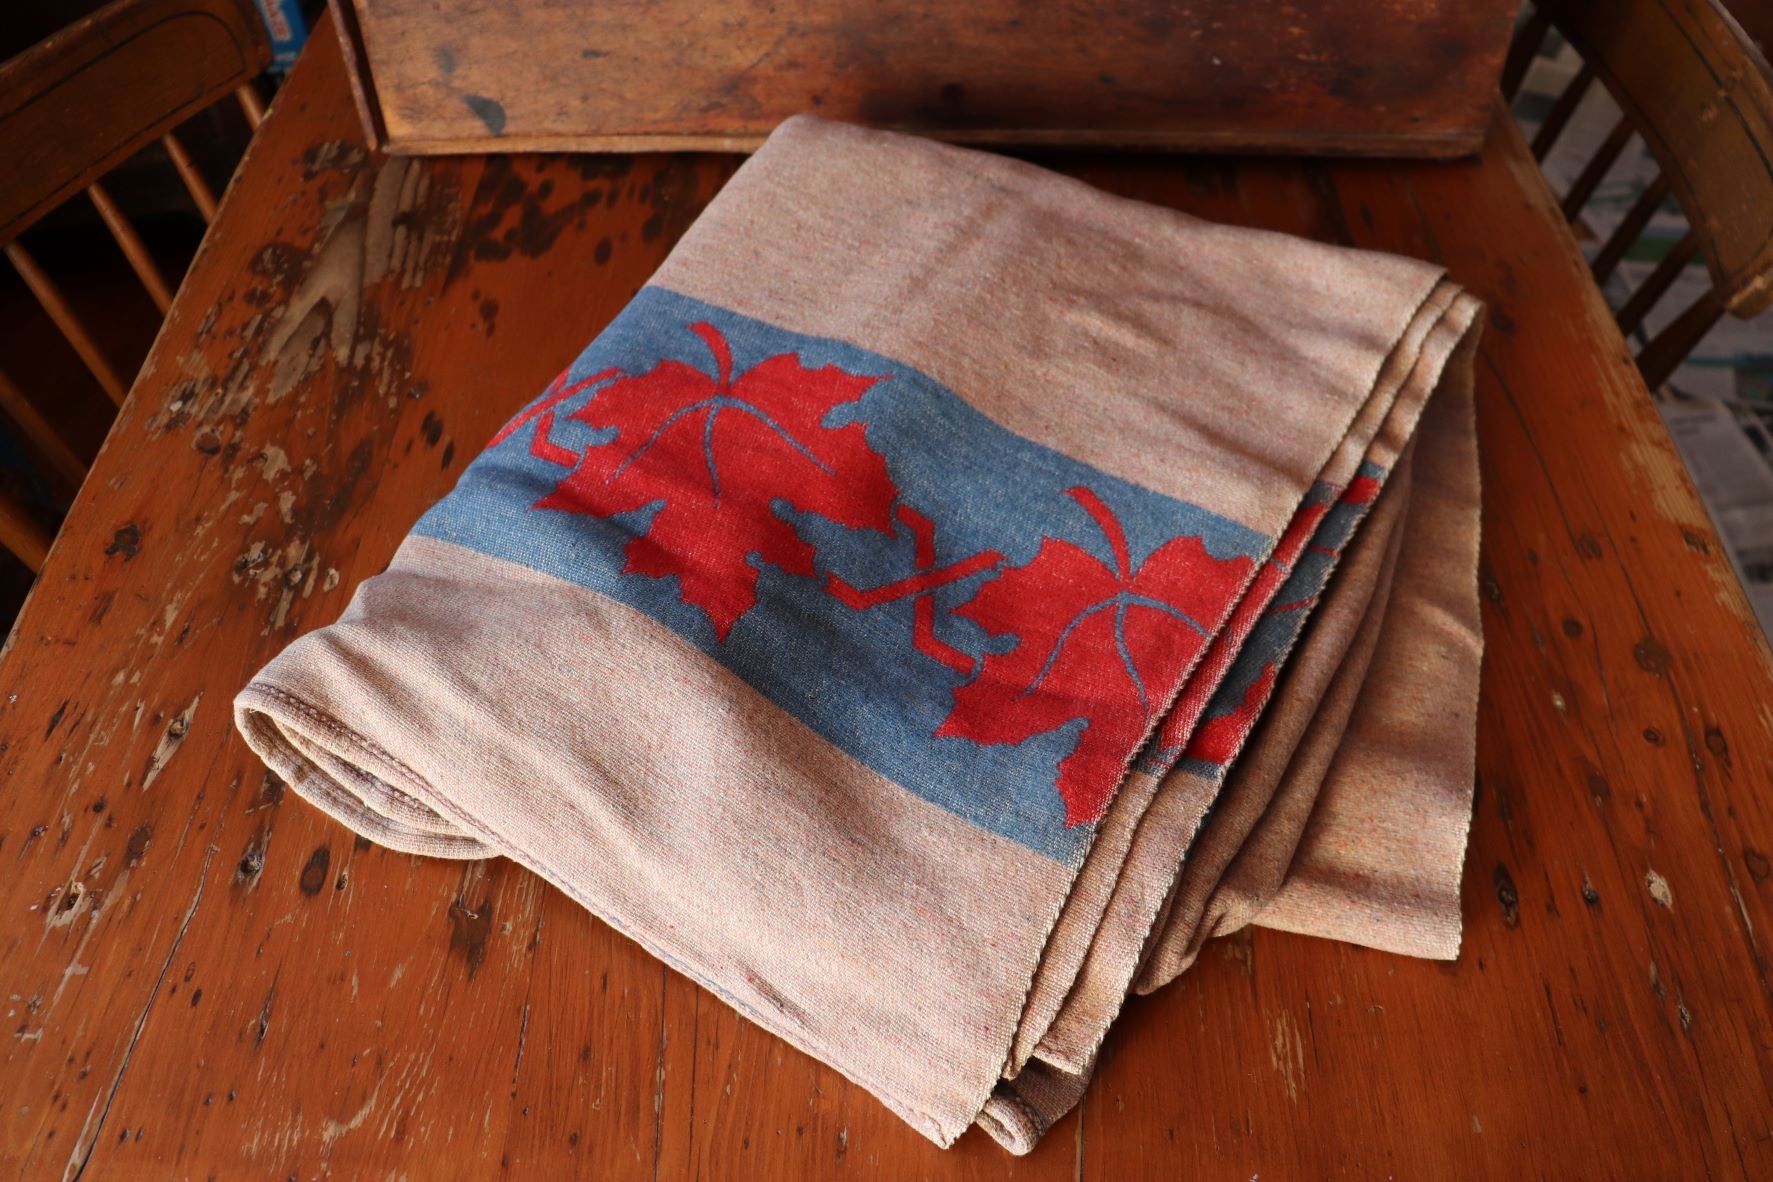 Vintage Blanket With Maple Leaf Border